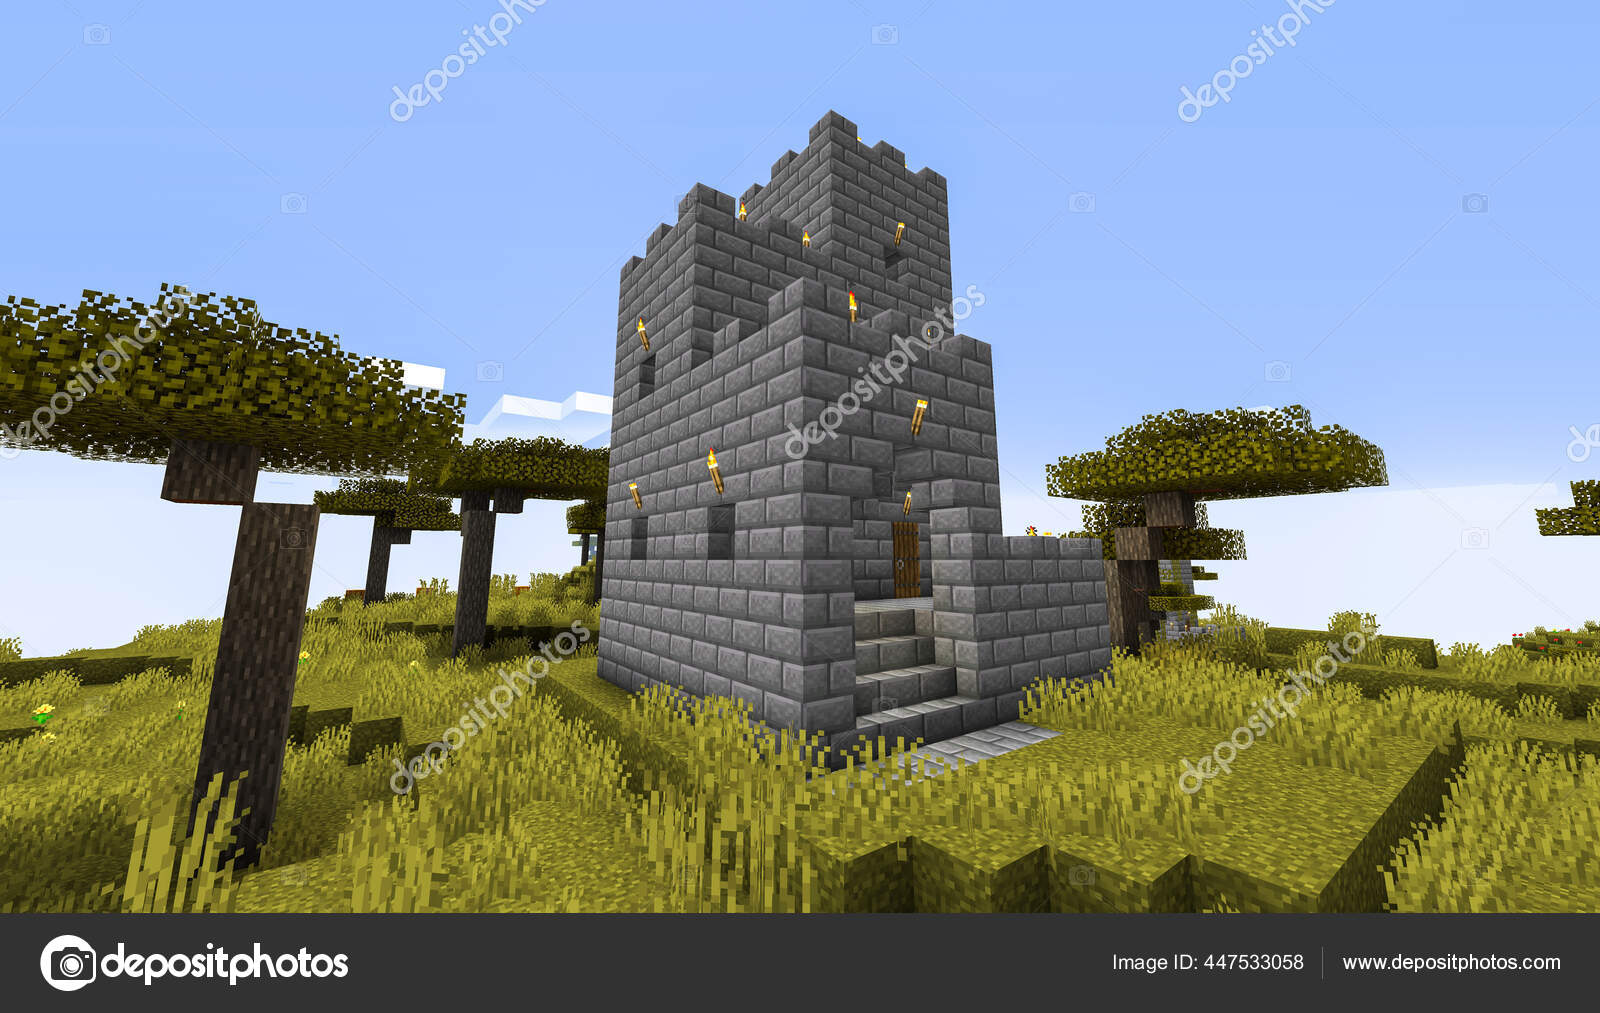 Minecraft Game Fevereiro 2021 Amostra Castelo Medieval Pedra Simples  Ilustração — Fotografia de Stock Editorial © Yuriy_Vlasenko #447533542